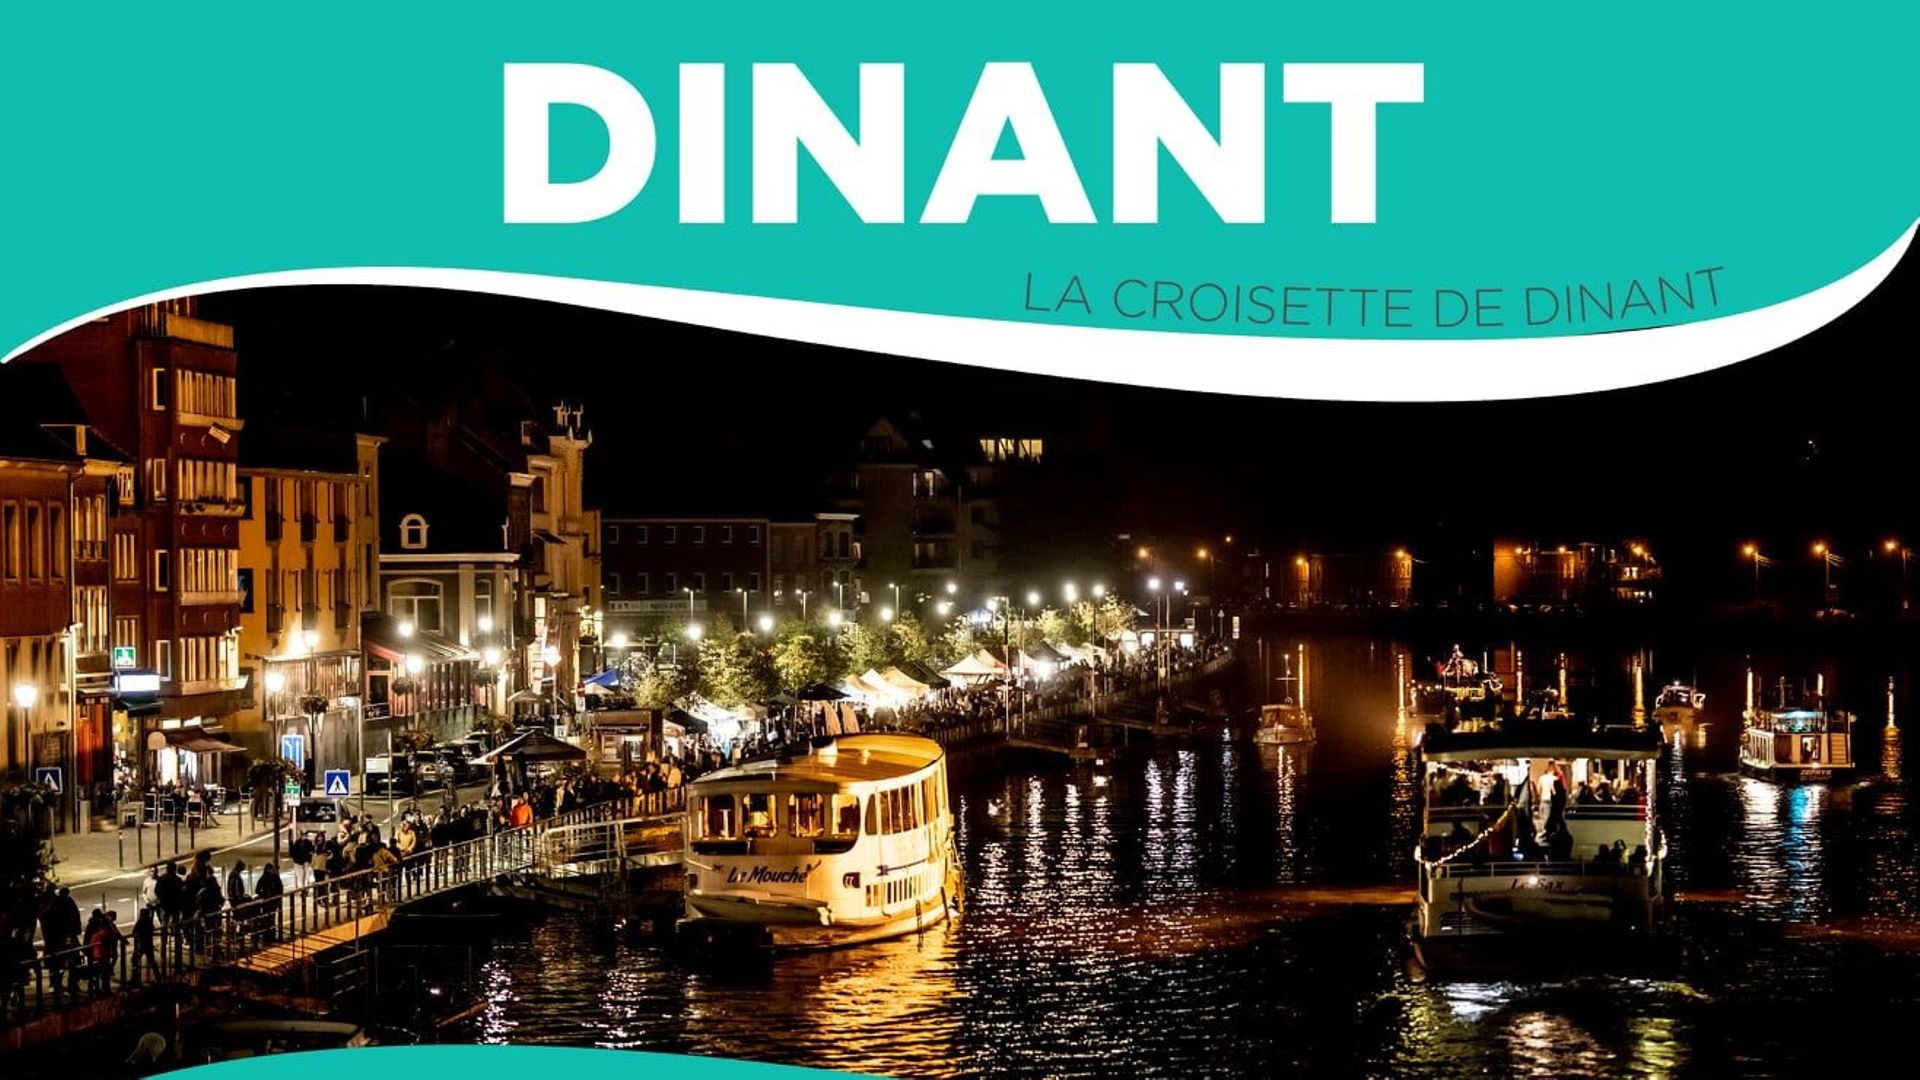 Parade féerique est bateaux illuminés à Dinant